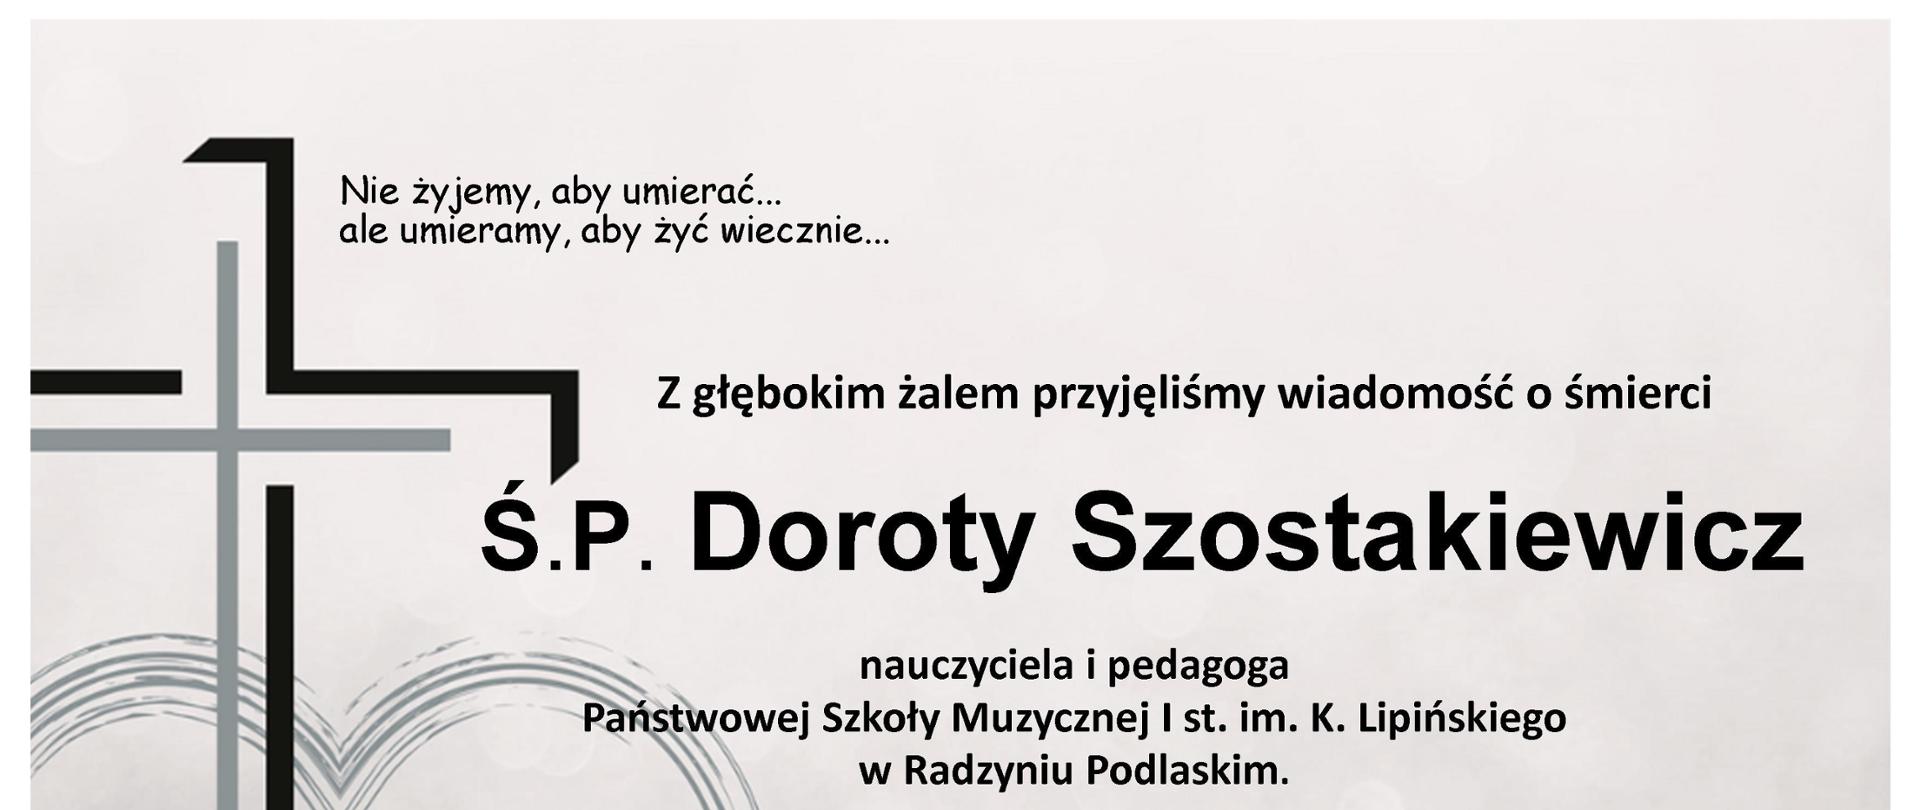 Po lewej stronie czarno-szary krzyż oraz informacje na temat śmierci nauczyciela - p. Doroty Szostakiewicz